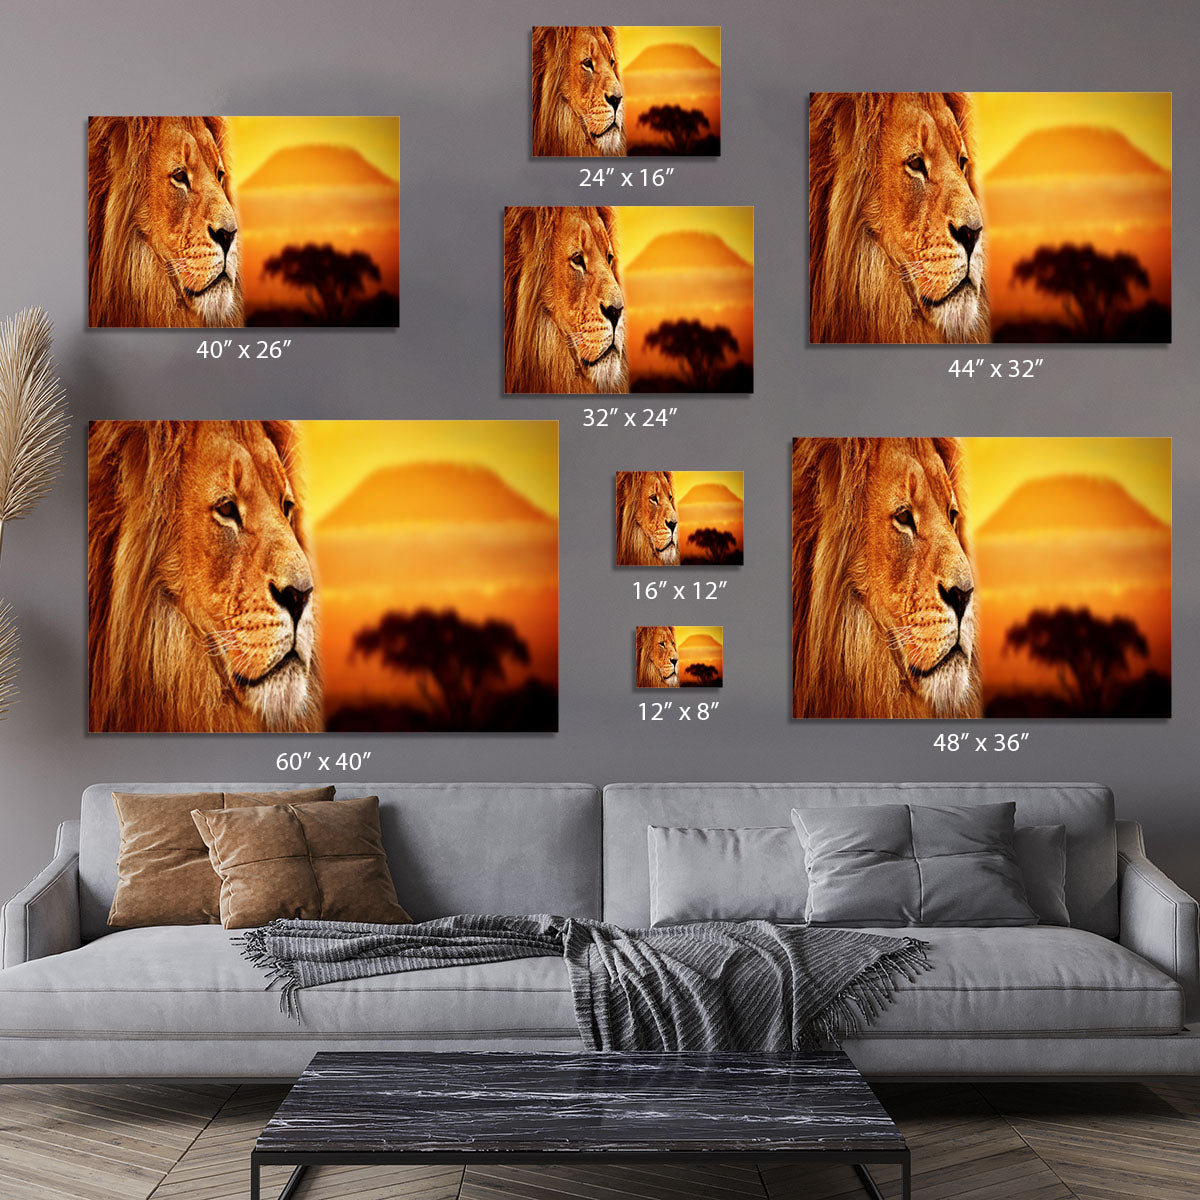 Lion portrait on savanna landscape Canvas Print or Poster - Canvas Art Rocks - 7